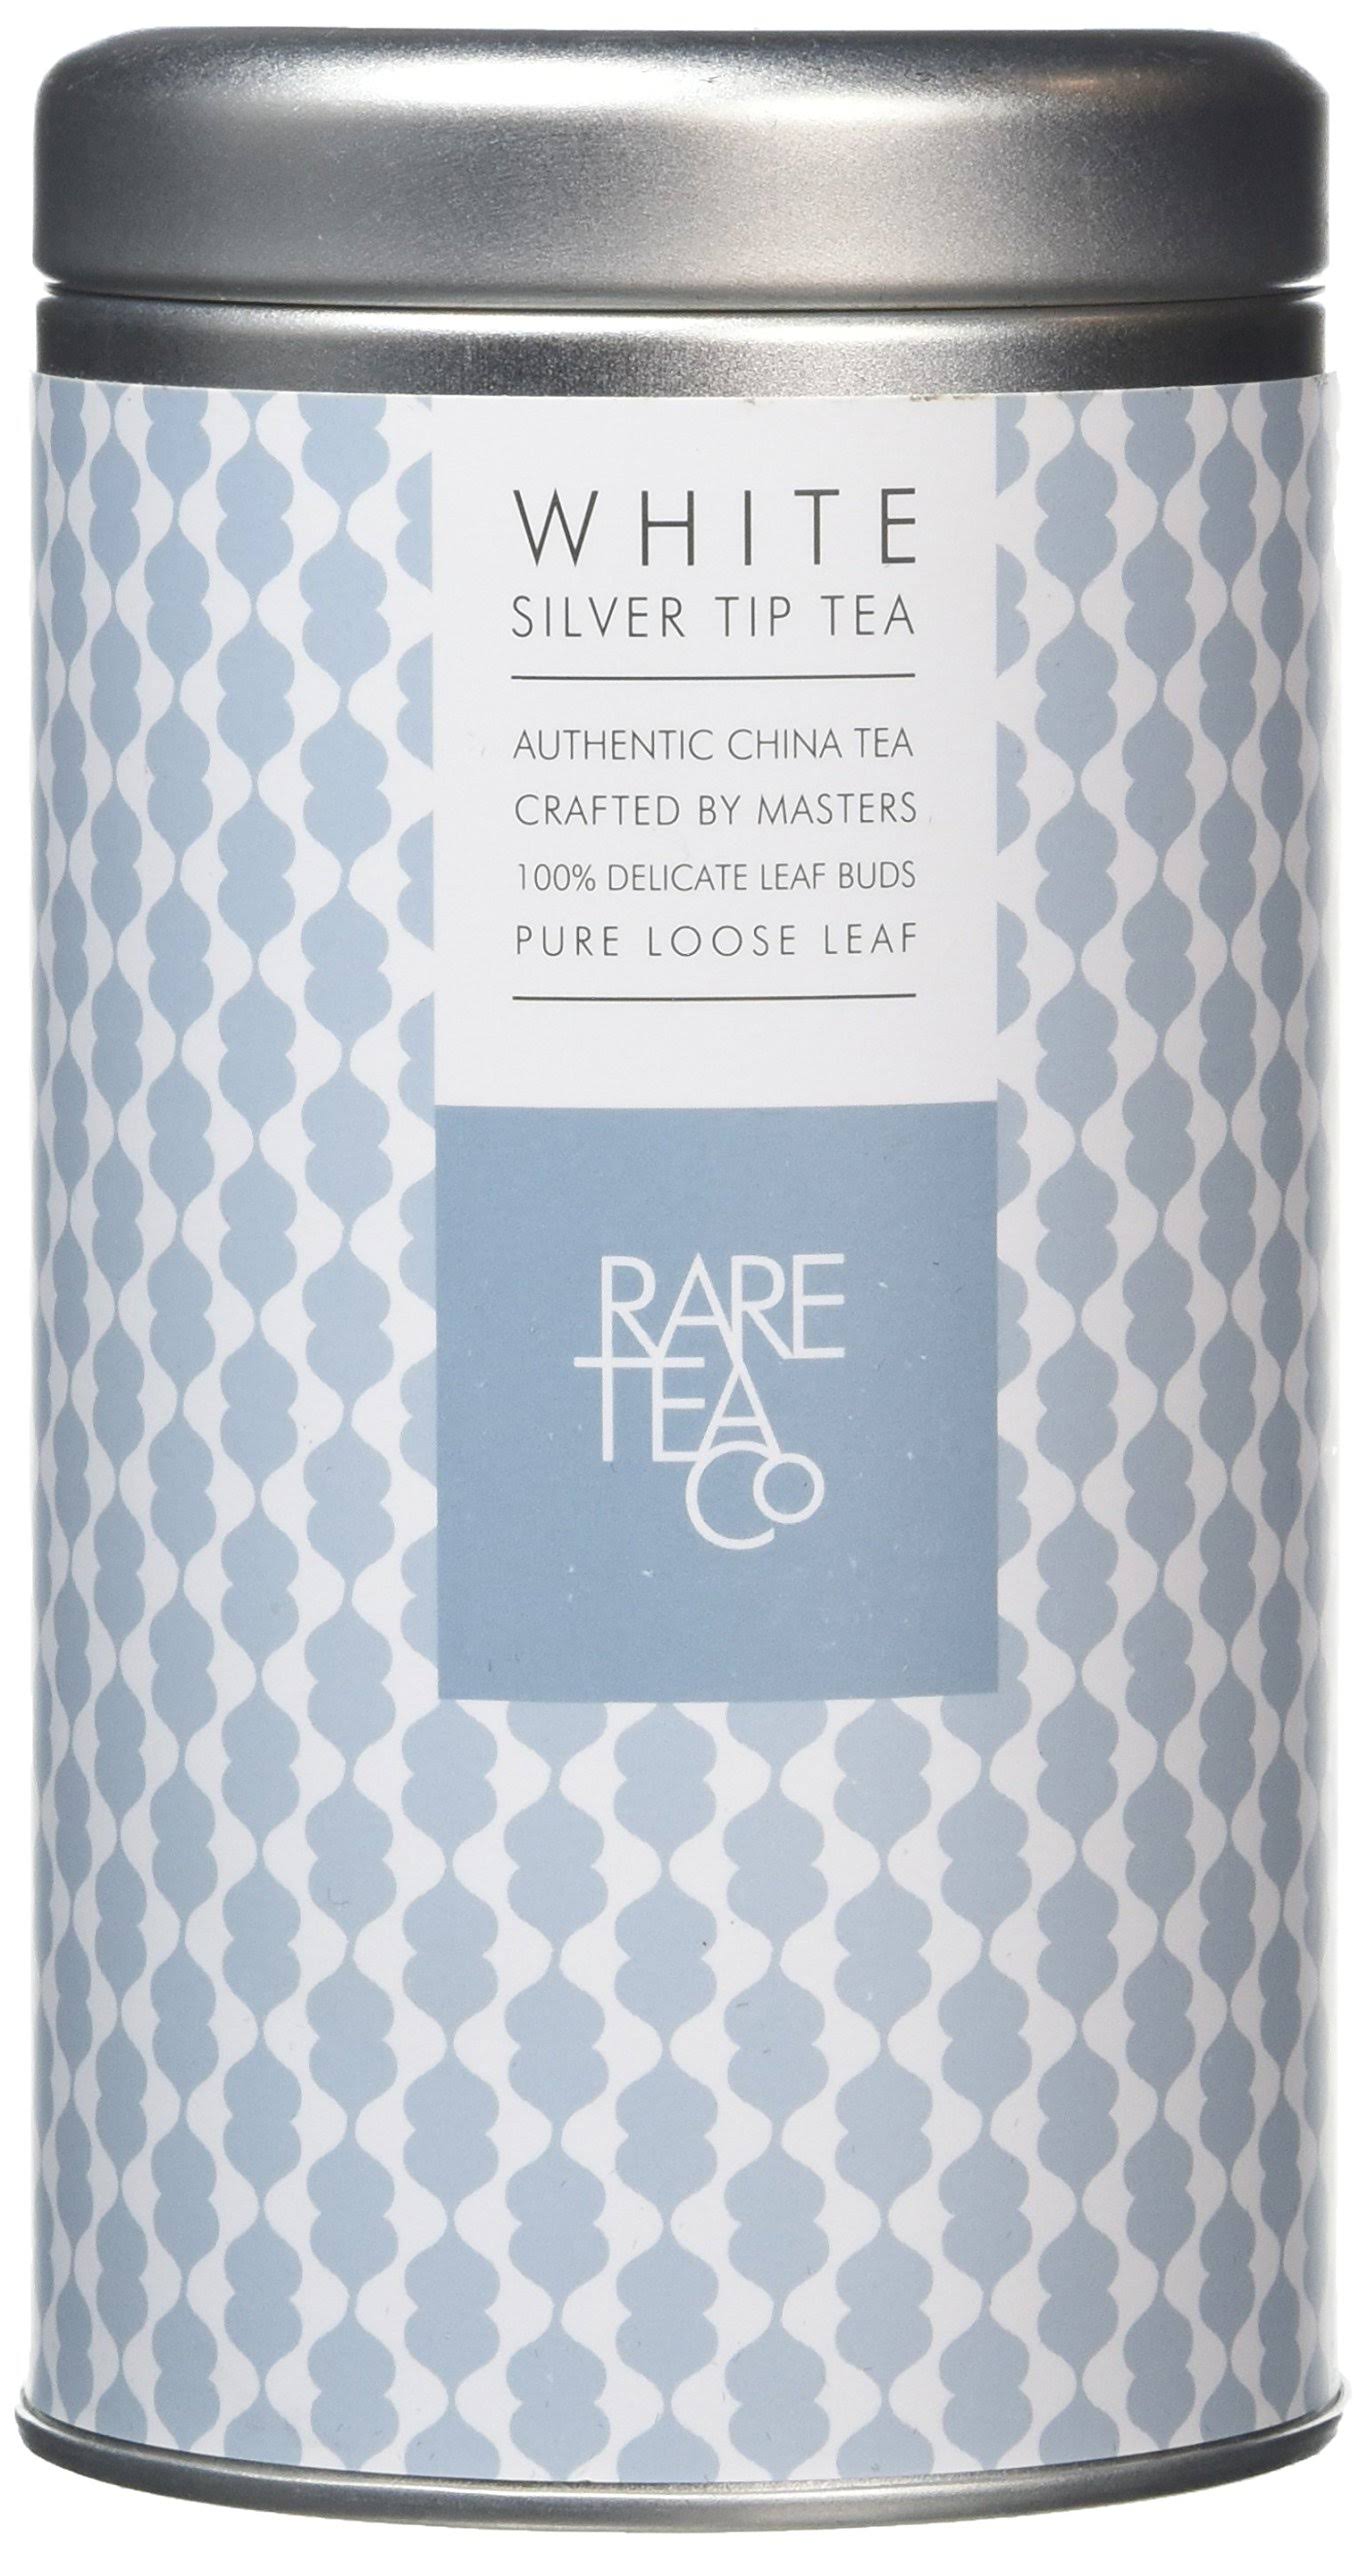 Rare Tea Company White Silver Tip Tea Tin 25g, Size: One Size